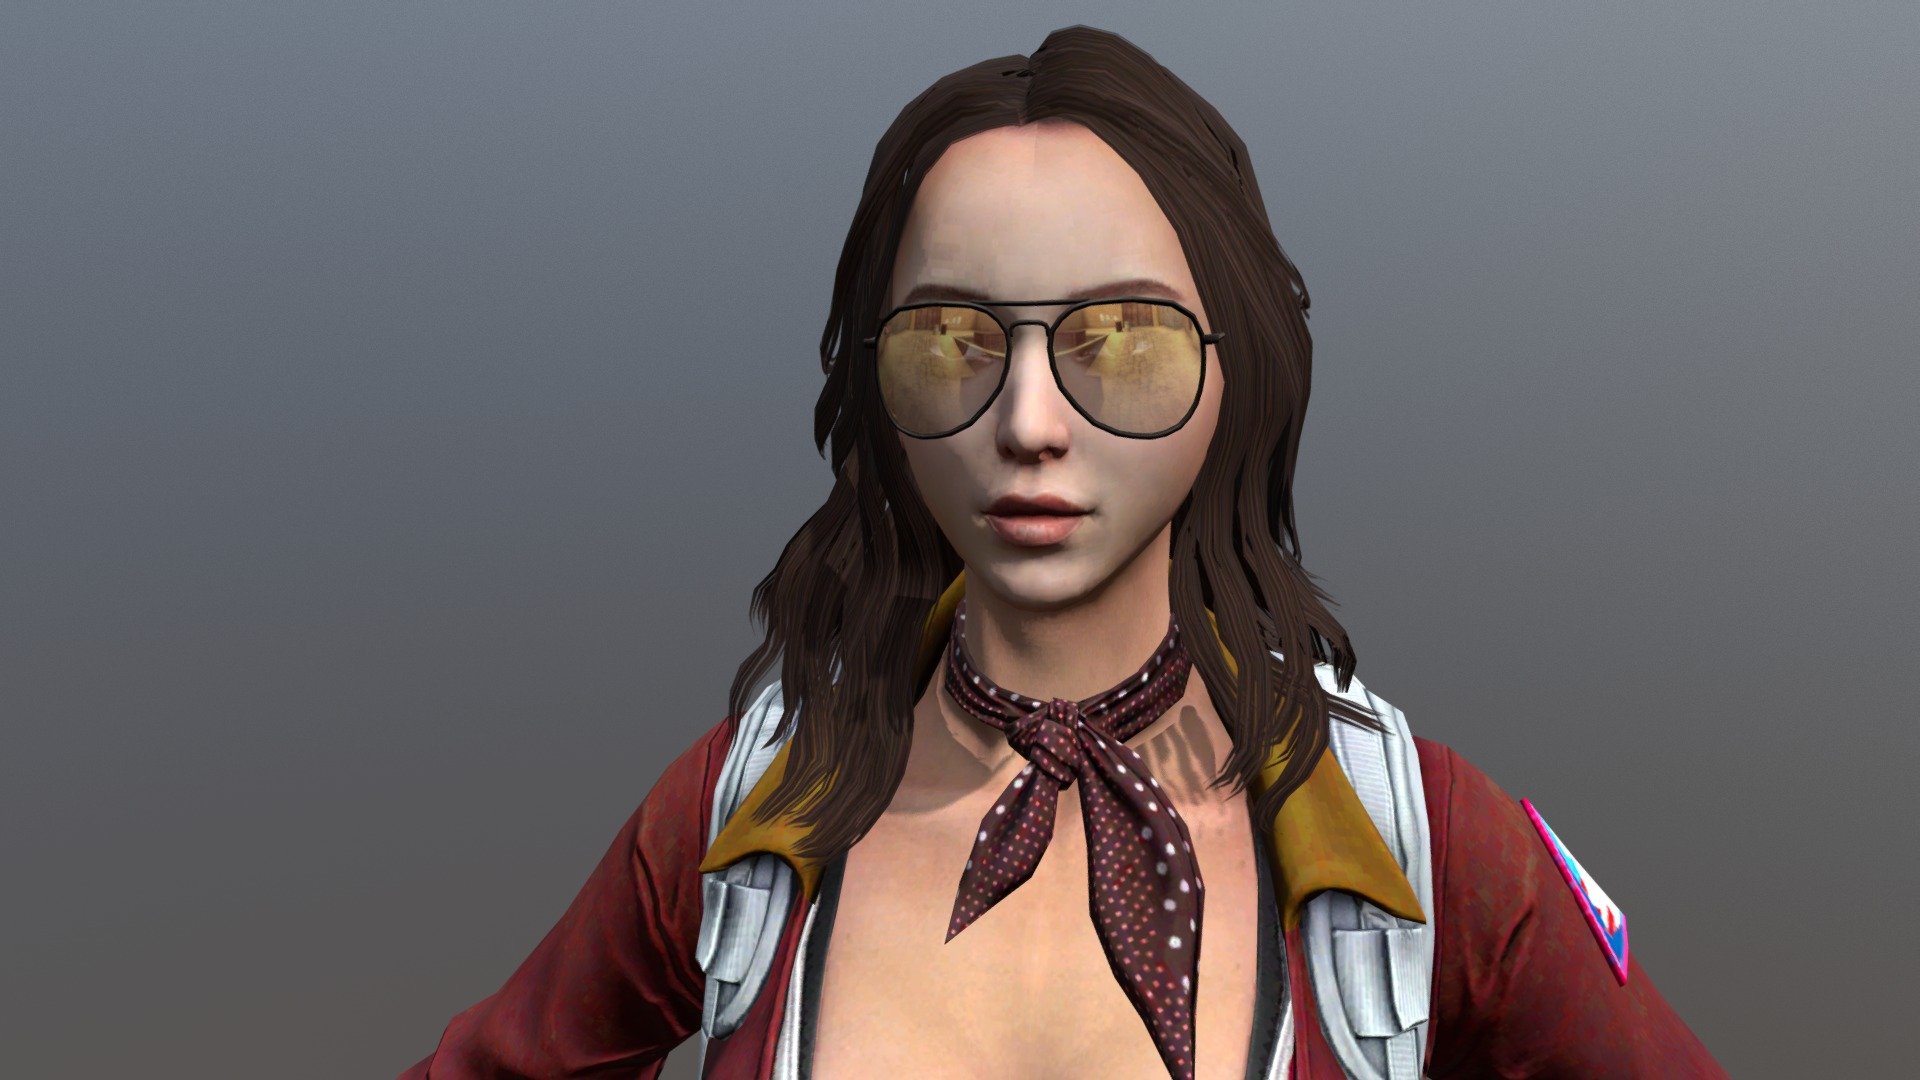 DEDUST2.RU DEATHMATCH - Carrie Terrorist
(CSO2 model) - Carrie TR - 3D model by 3axap (@3axapV) 3d model